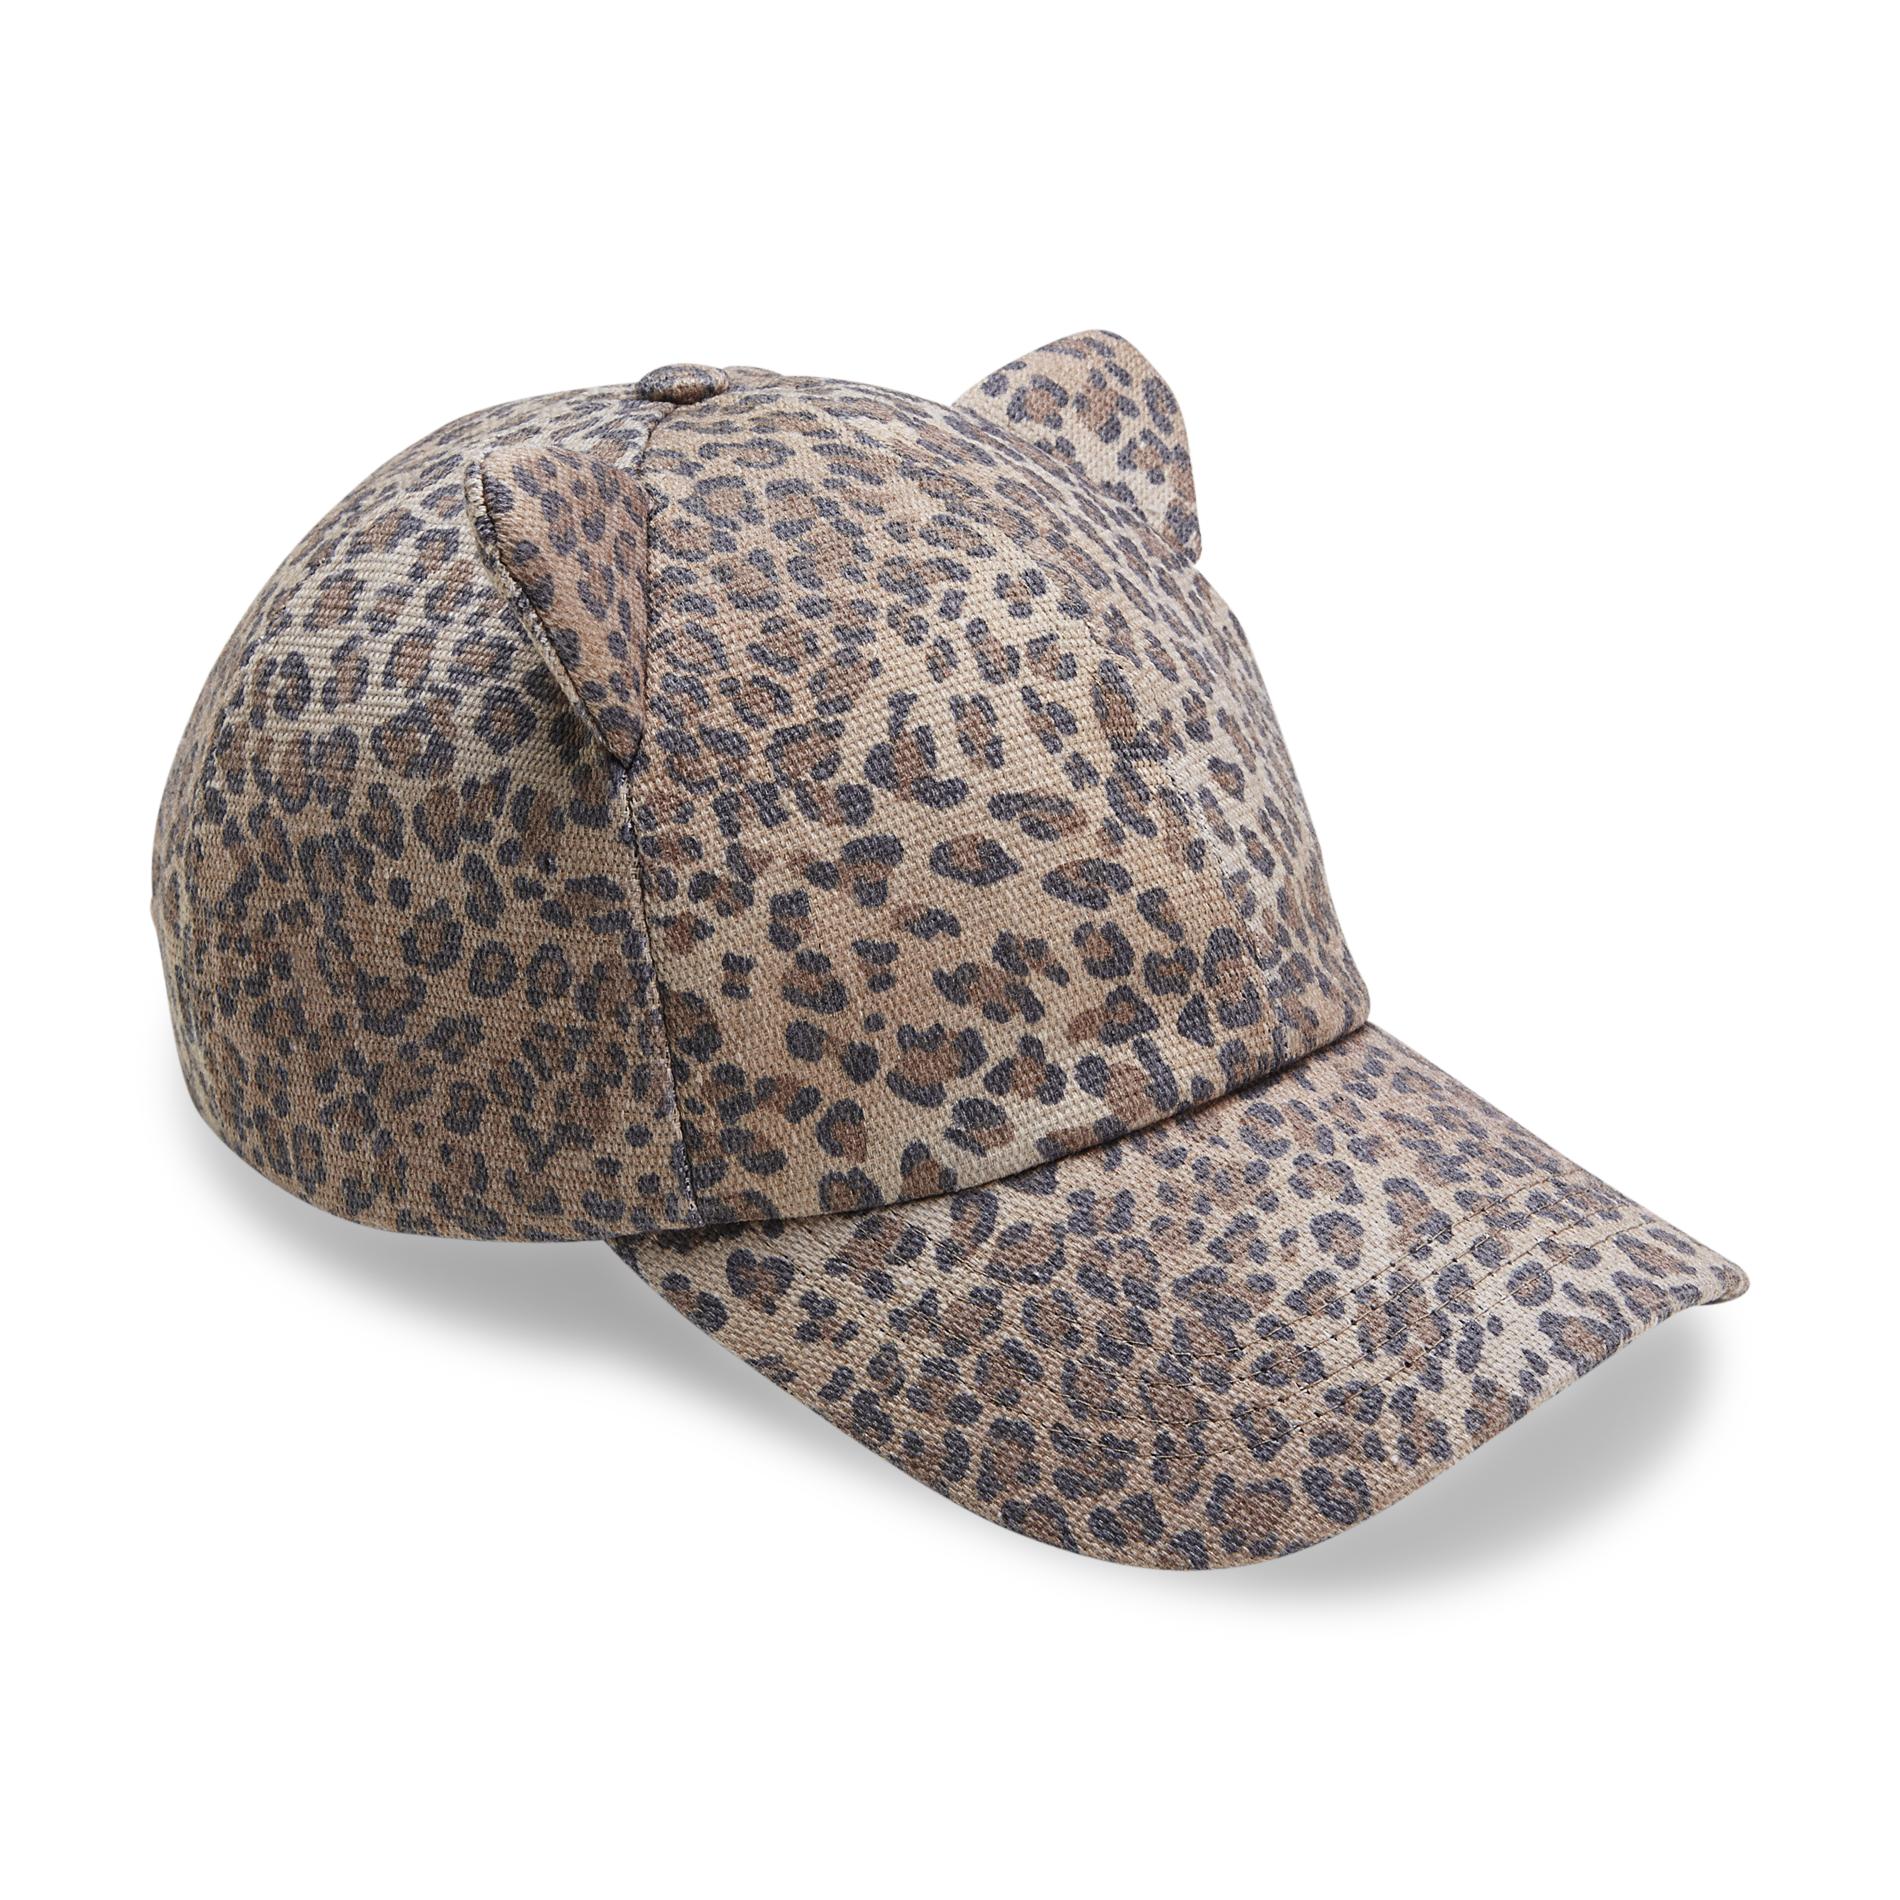 Joe Boxer Junior's Cat Baseball Cap - Leopard Print